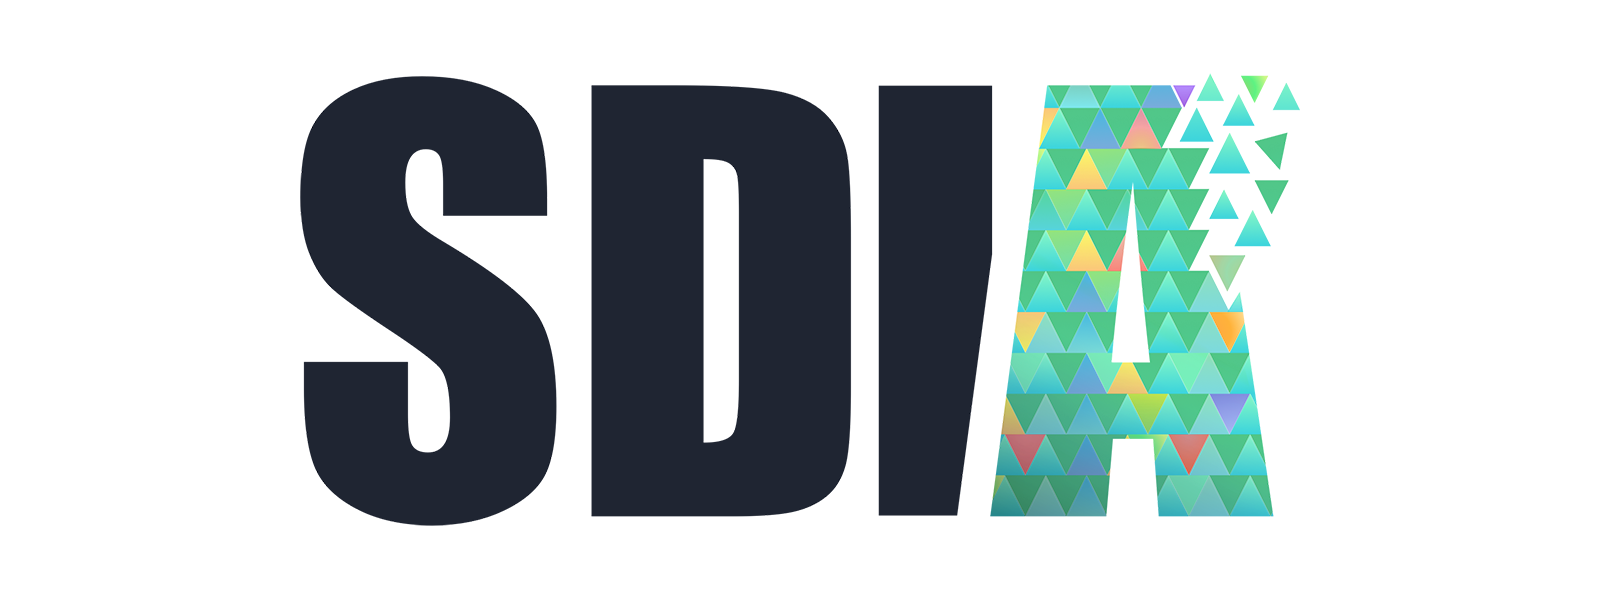 SDIA logo